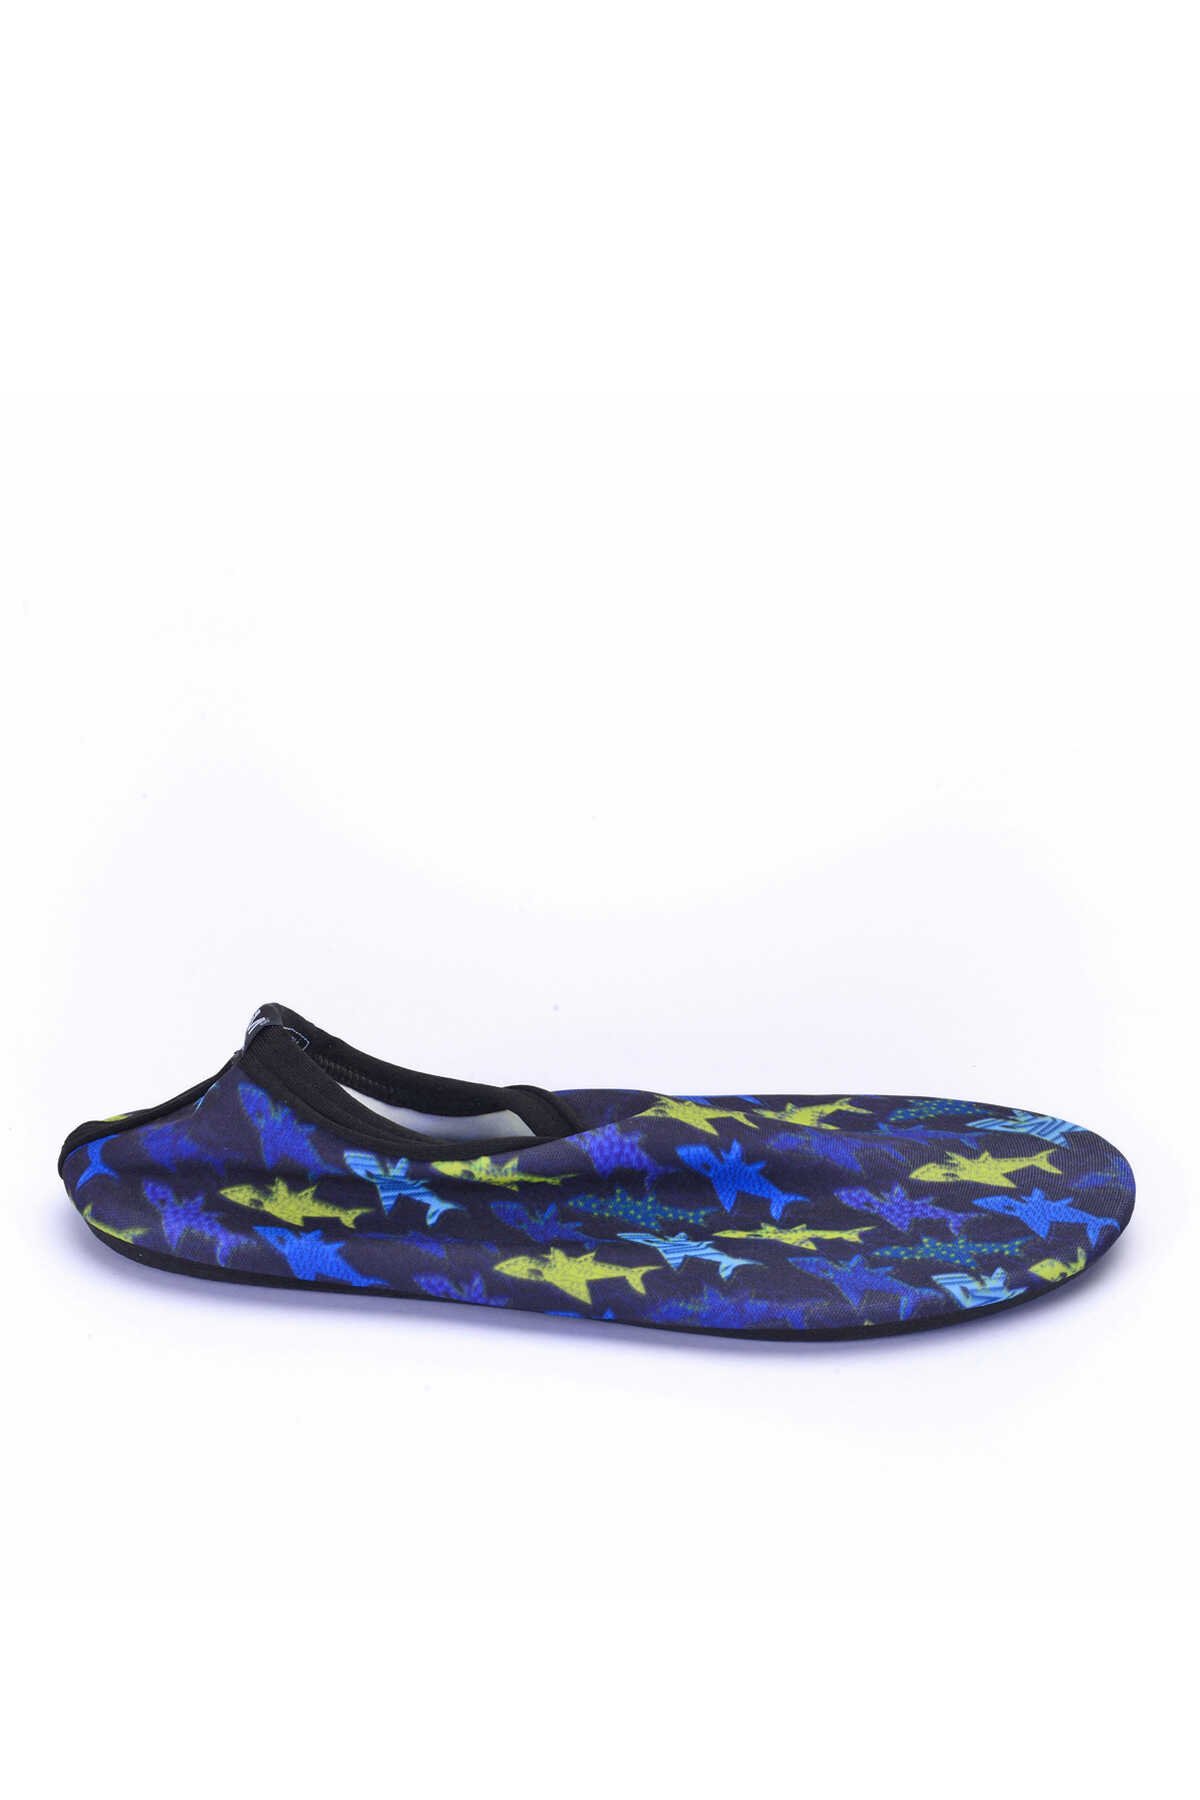 ESEM - ESEM SAVANA Deniz Ayakkabısı Erkek Çocuk Ayakkabı Lacivert / Mavi